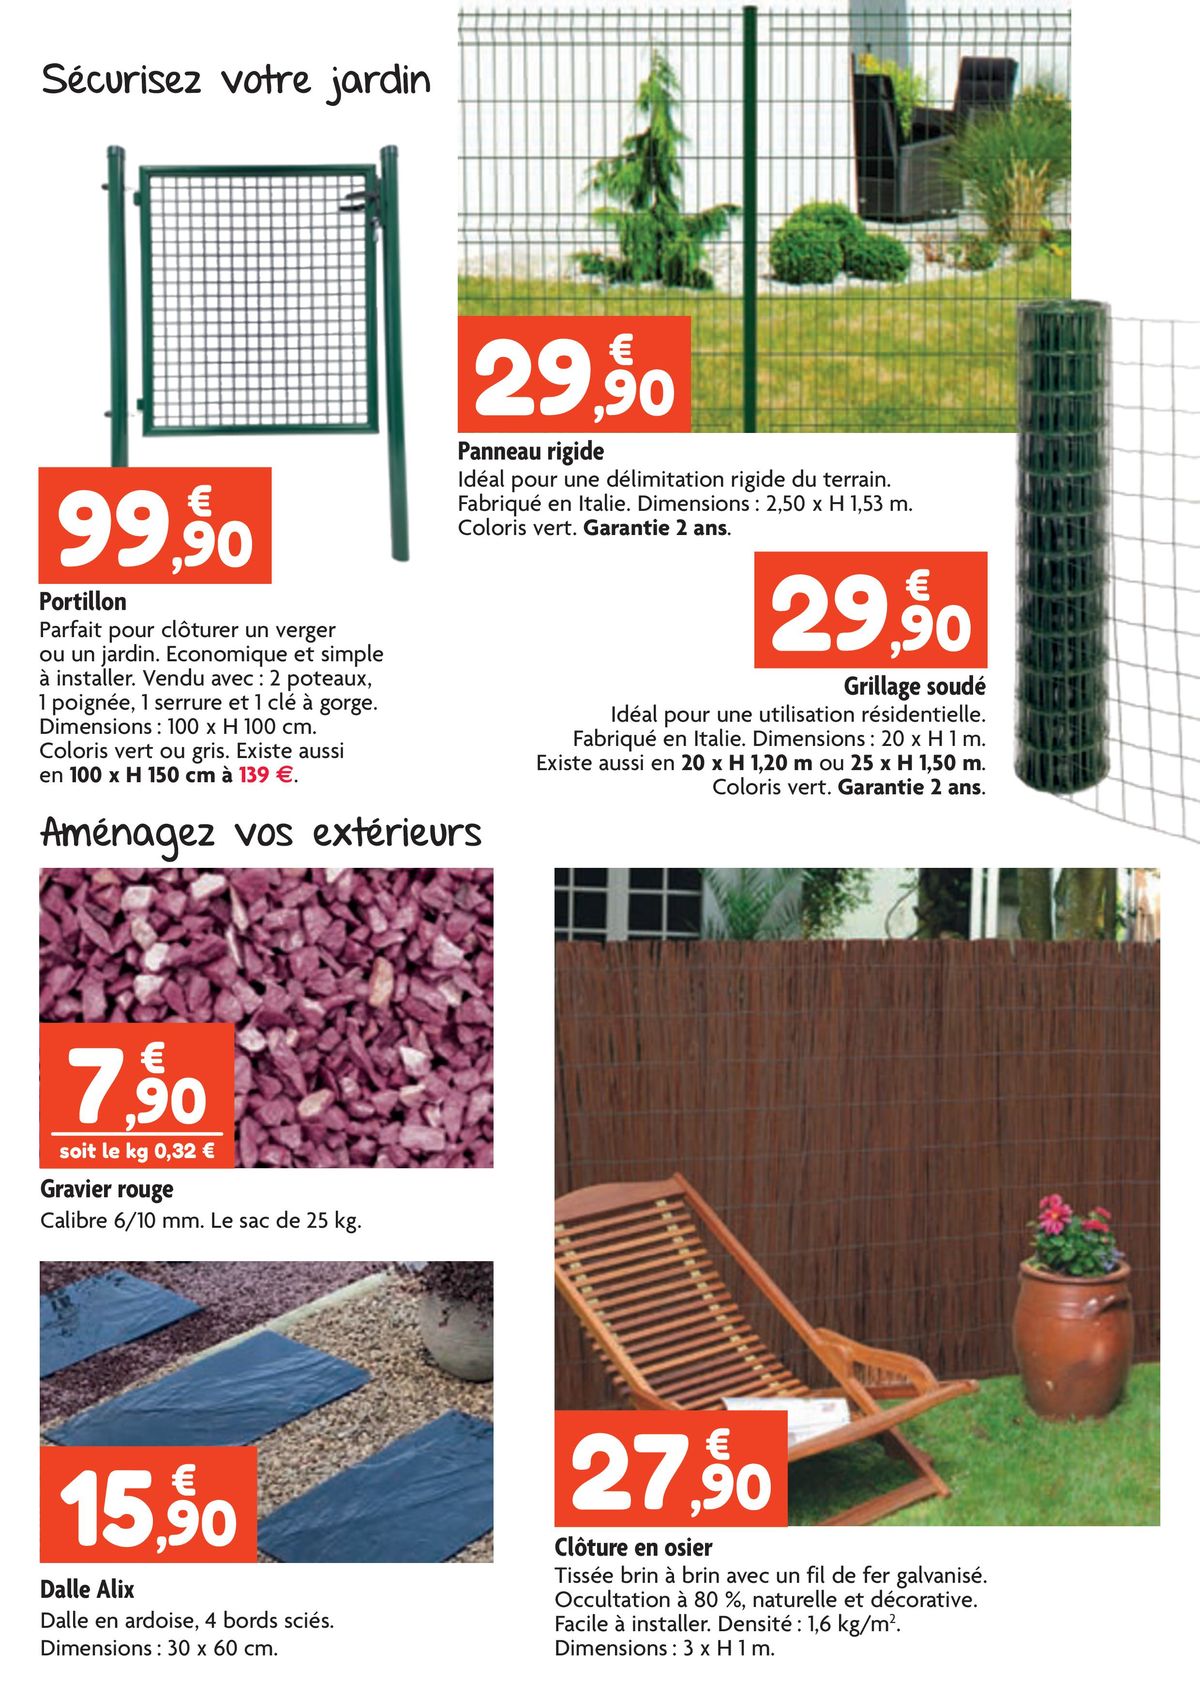 Catalogue À vos côtés pour un jardin aux belles couleurs !, page 00006